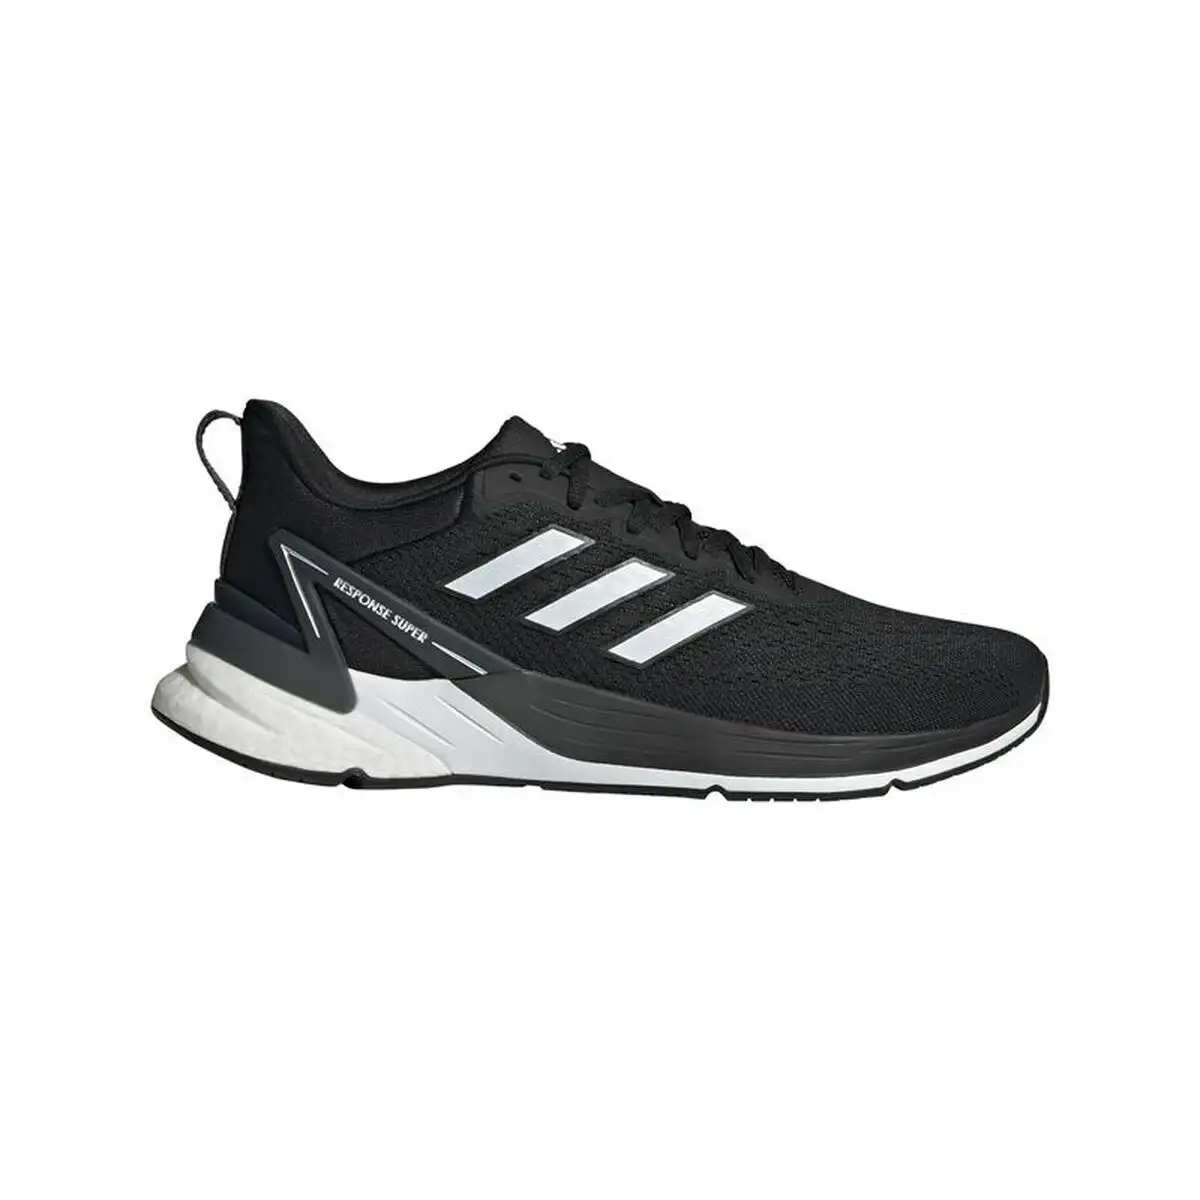 Chaussures de sport pour homme adidas response super 2 0 noir homme_4569. DIAYTAR SENEGAL - Où Choisir Devient une Découverte. Explorez notre boutique en ligne et trouvez des articles qui vous surprennent et vous ravissent à chaque clic.